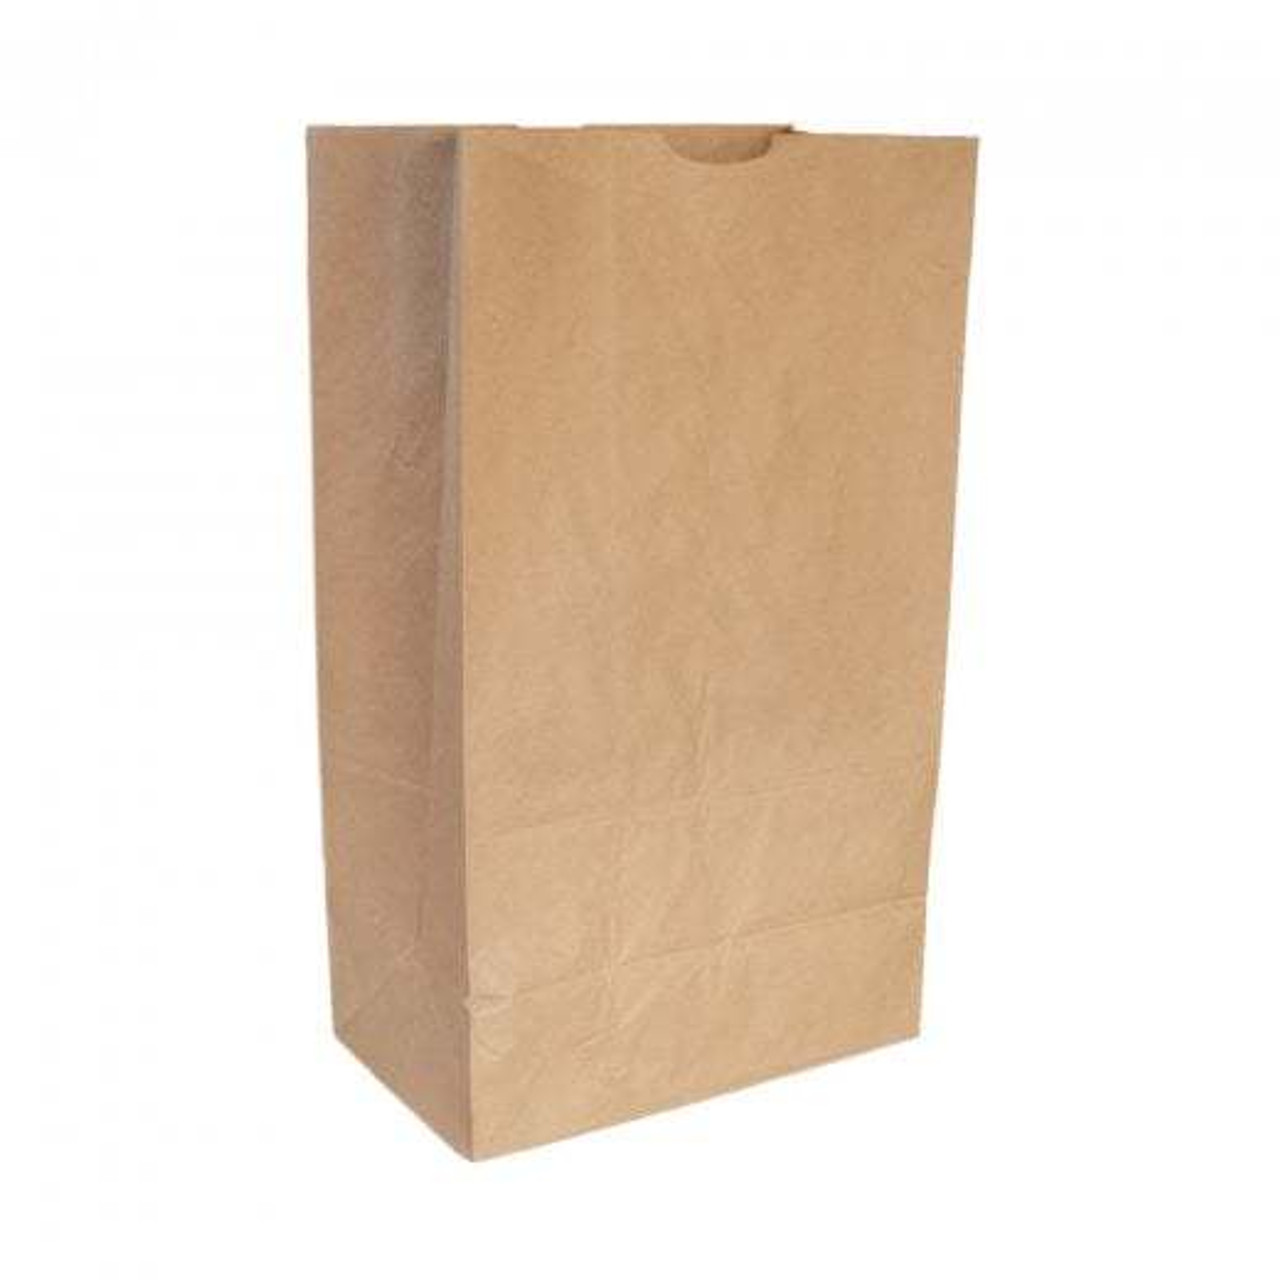 SOS #16 x-large brown bag, box of 250pcs — Green Pack